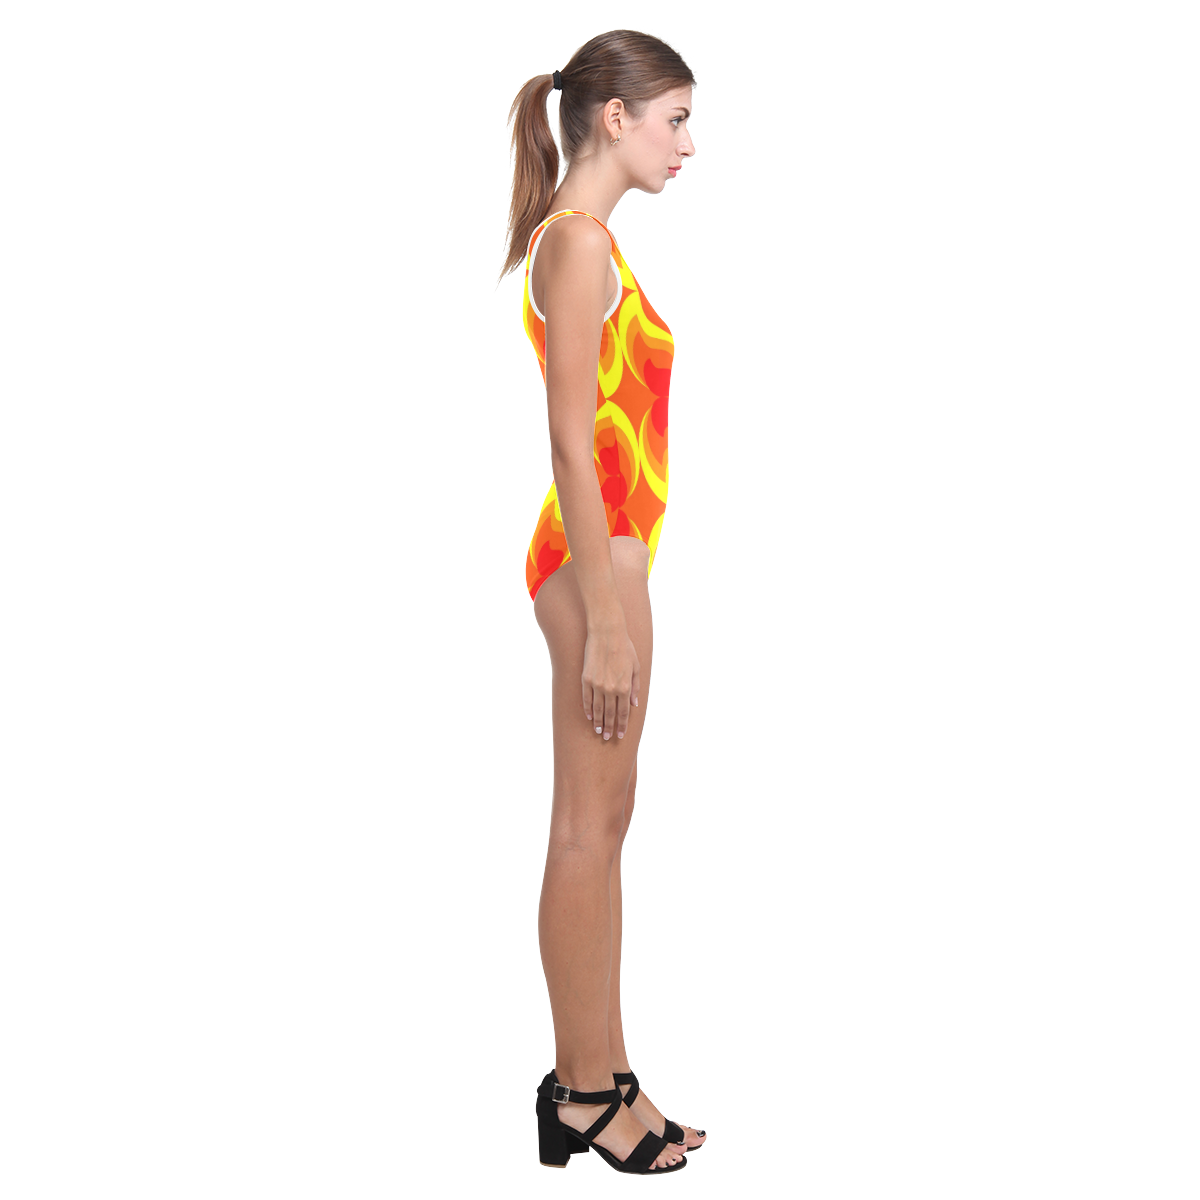 FLAMES Vest One Piece Swimsuit (Model S04)